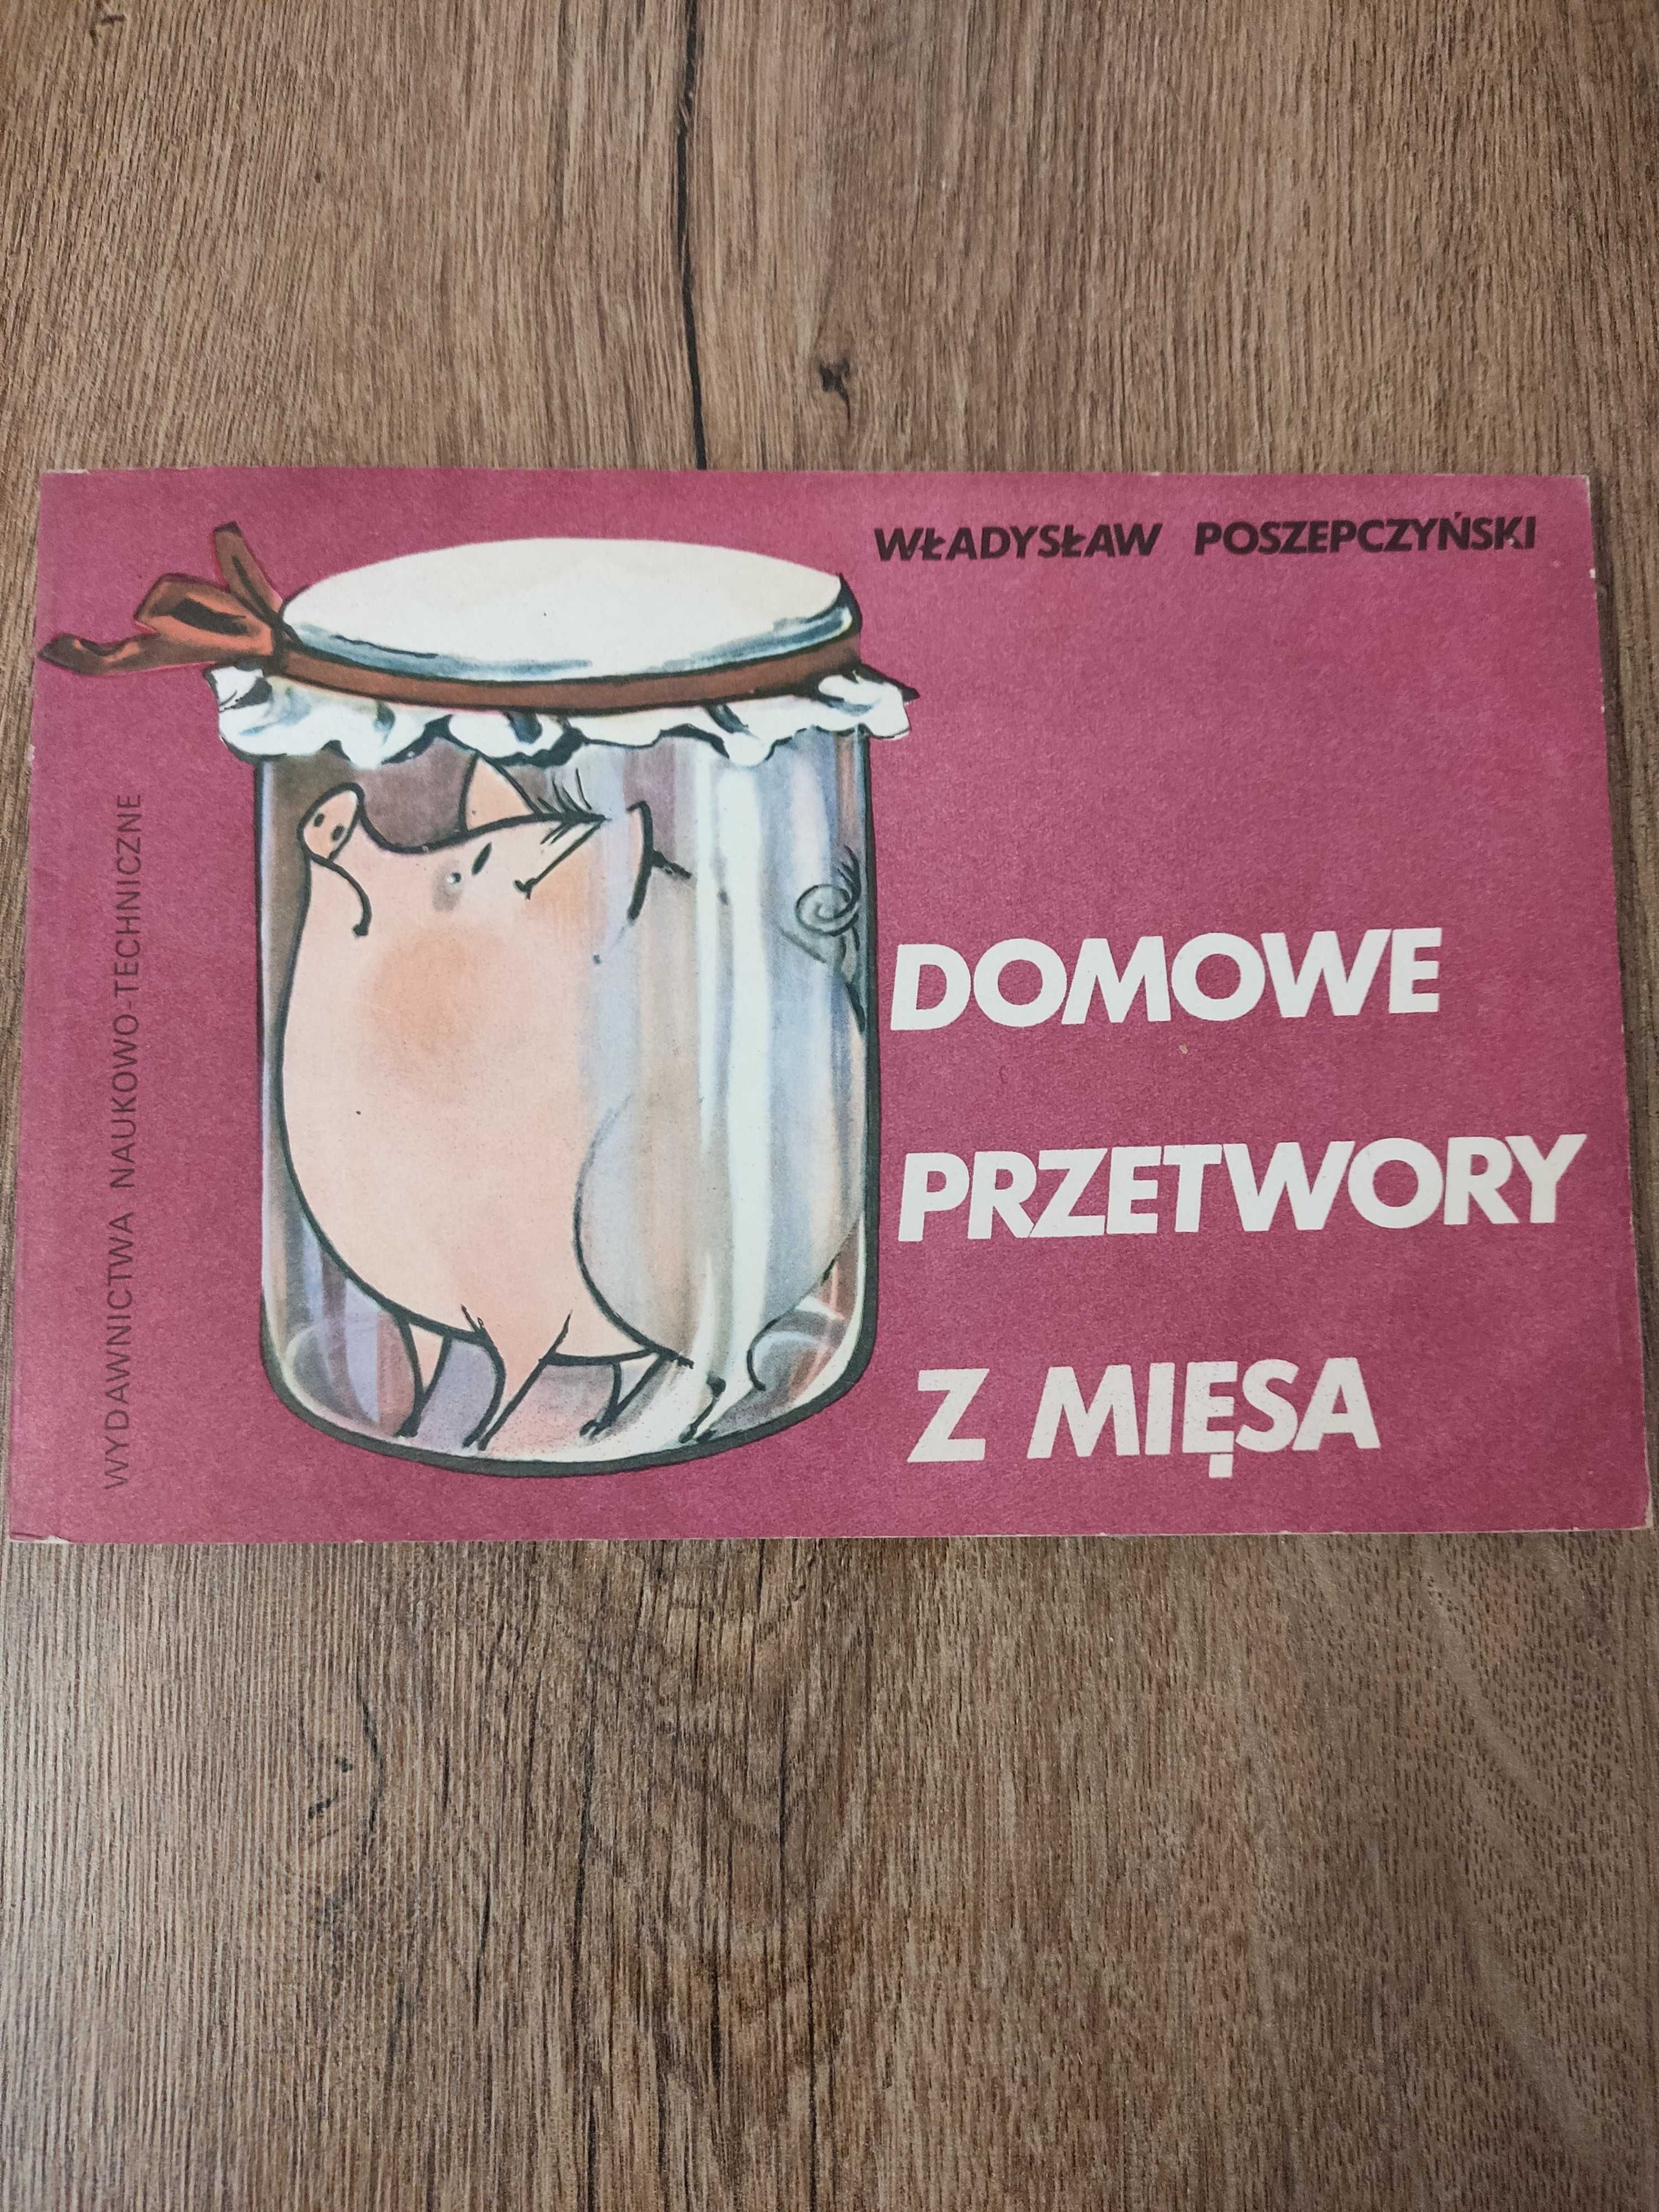 Domowe przetwory z mięsa (Wydanie drugie), Władysław Poszepczyński